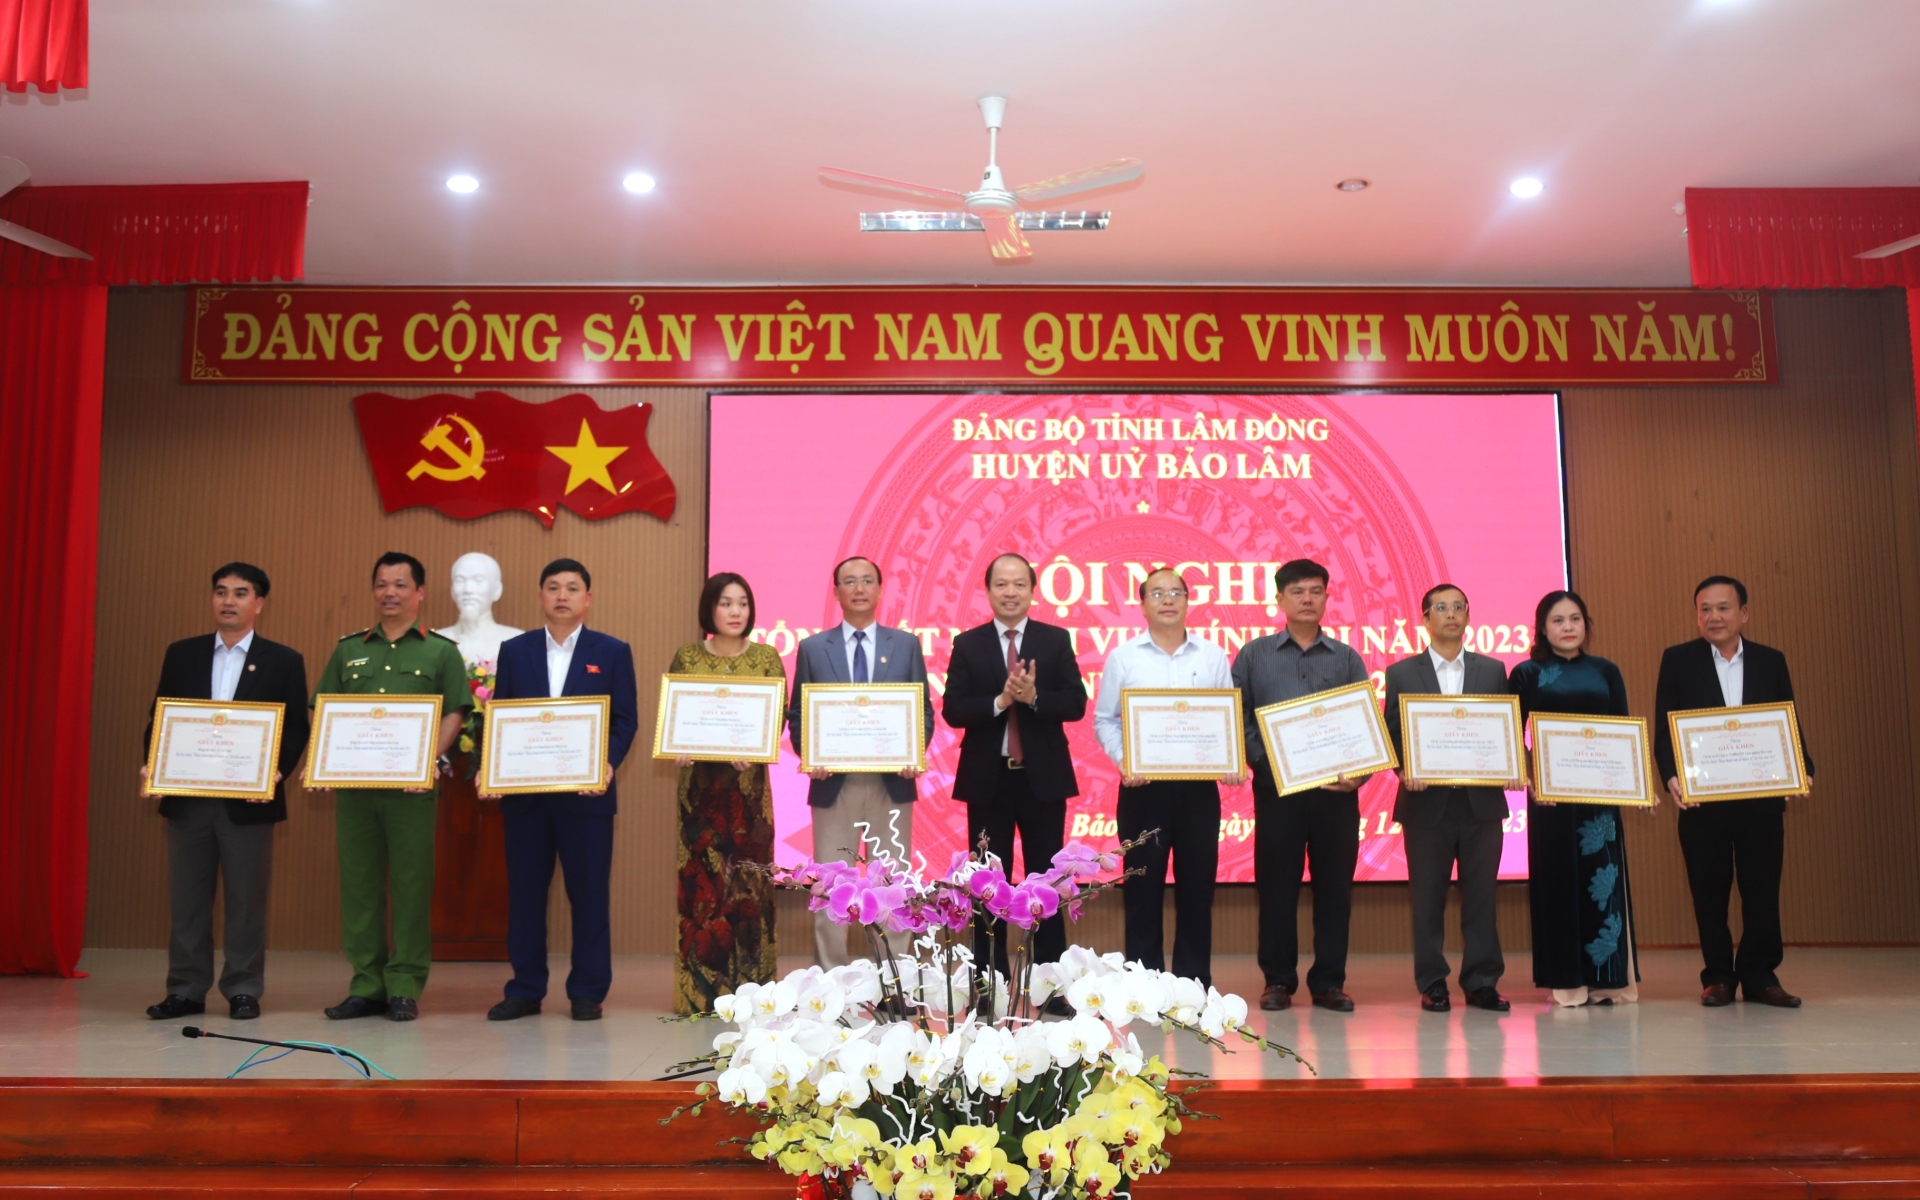 Bí thư Huyện ủy Bảo Lâm Nguyễn Viết Vân trao khen thưởng cho các tổ chức cơ sở Đảng hoàn thành xuất sắc nhiệm vụ năm 2023